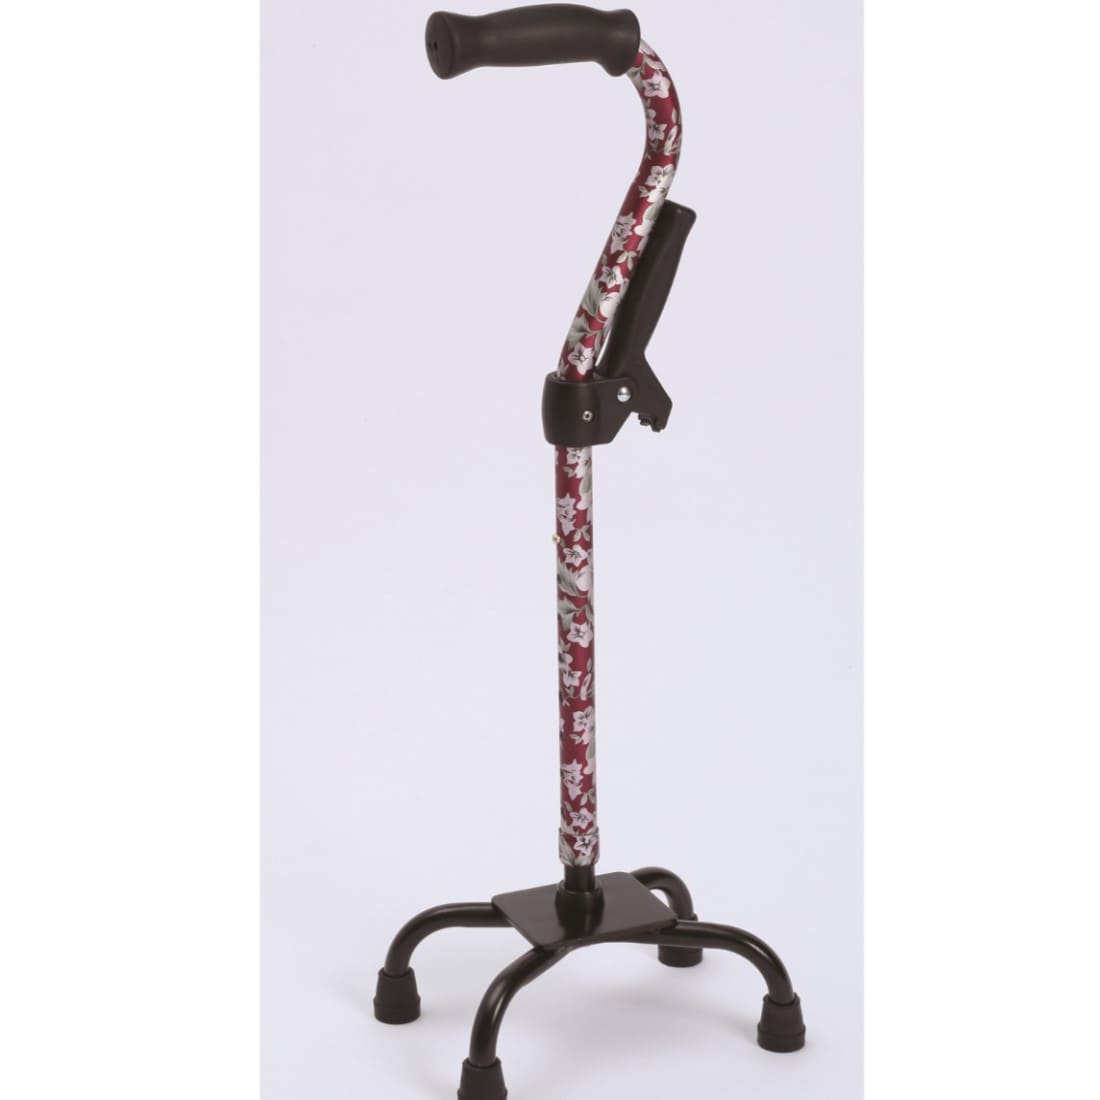 立ち座りがしやすい補助グリップ付四点杖です ・四点で支えるため、歩行時にバランスが取りやすく接地面が広くなり、安定した歩行を支えます。 ・折畳式の補助グリップ付で立ち座り時に両手を使うことができ、腰・膝への負担が軽減します。 材質 シャフト:アルミニウム グリップ:エラストマー 脚部:アルミニウム 替えゴム:合成ゴム 補助グリップ:ナイロン サイズ 約64〜82cm伸縮 (8段階調節・2.5cmピッチ) ベース部: 幅22.0X奥行15.0X高さ8.0cm類似商品はこちらフジホーム 四点杖補助グリップ付 木目ブラウン7,450円ウエルケアバンク モア四点杖 ブラック L W5,900円島製作所 オールアルミクォッドケイン おしゃれ5,580円ユーバ産業 四点前後可動・固定式2ウェイステッ12,000円島製作所 アルミMIX四点可動式スモールタイプ8,700円ユーバ産業 四点前後可動・固定式2ウェイステッ12,000円ユーバ産業 四点前後可動・固定式2ウェイステッ12,000円ユーバ産業 四点前後可動・固定式2ウェイステッ12,000円ユーバ産業 四点前後可動・固定式2ウェイステッ12,000円新着商品はこちら2024/5/15杖やすめ リーフ640円2024/5/10EAR BAND-IT 水泳用ヘッドバンド イ1,980円2024/5/6クイックエイド乾燥セット4,800円再販商品はこちら2024/5/20クリロン化成 BOS非常用臭わないトイレセット1,750円2024/5/20ウェルファン 夢ライフステッキ 伸縮型 ブラウ1,750円2024/5/20ウェルファン 夢ライフステッキ スリムネック 7,100円2024/05/20 更新四点杖補助グリップ付き■商品の特徴立ち座りがしやすい補助グリップ付四点杖です・四点で支えるため、歩行時にバランスが取りやすく接地面が広くなり、安定した歩行を支えます。・折畳式の補助グリップ付で立ち座り時に両手を使うことができ、腰・膝への負担が軽減します。仕様販売元フジホーム材質シャフト:アルミニウムグリップ:エラストマー脚部:アルミニウム替えゴム:合成ゴム補助グリップ:ナイロンサイズ約64〜82cm伸縮(8段階調節・2.5cmピッチ)ベース部: 幅22.0X奥行15.0X高さ8.0cm重量約640g生産国台湾